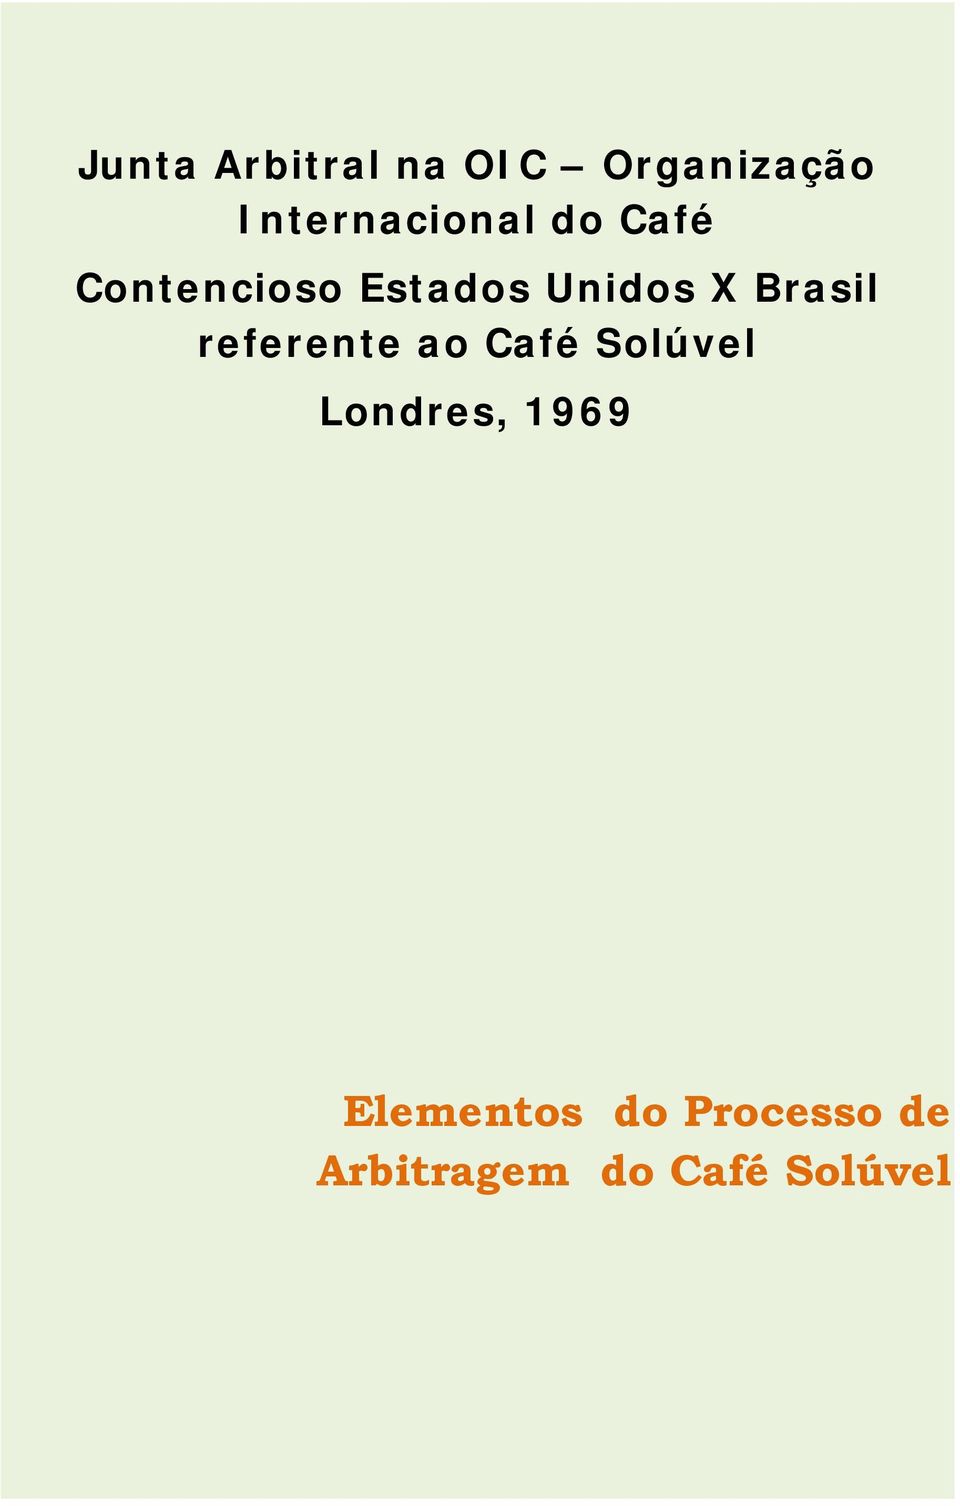 Unidos X Brasil referente ao Café Solúvel